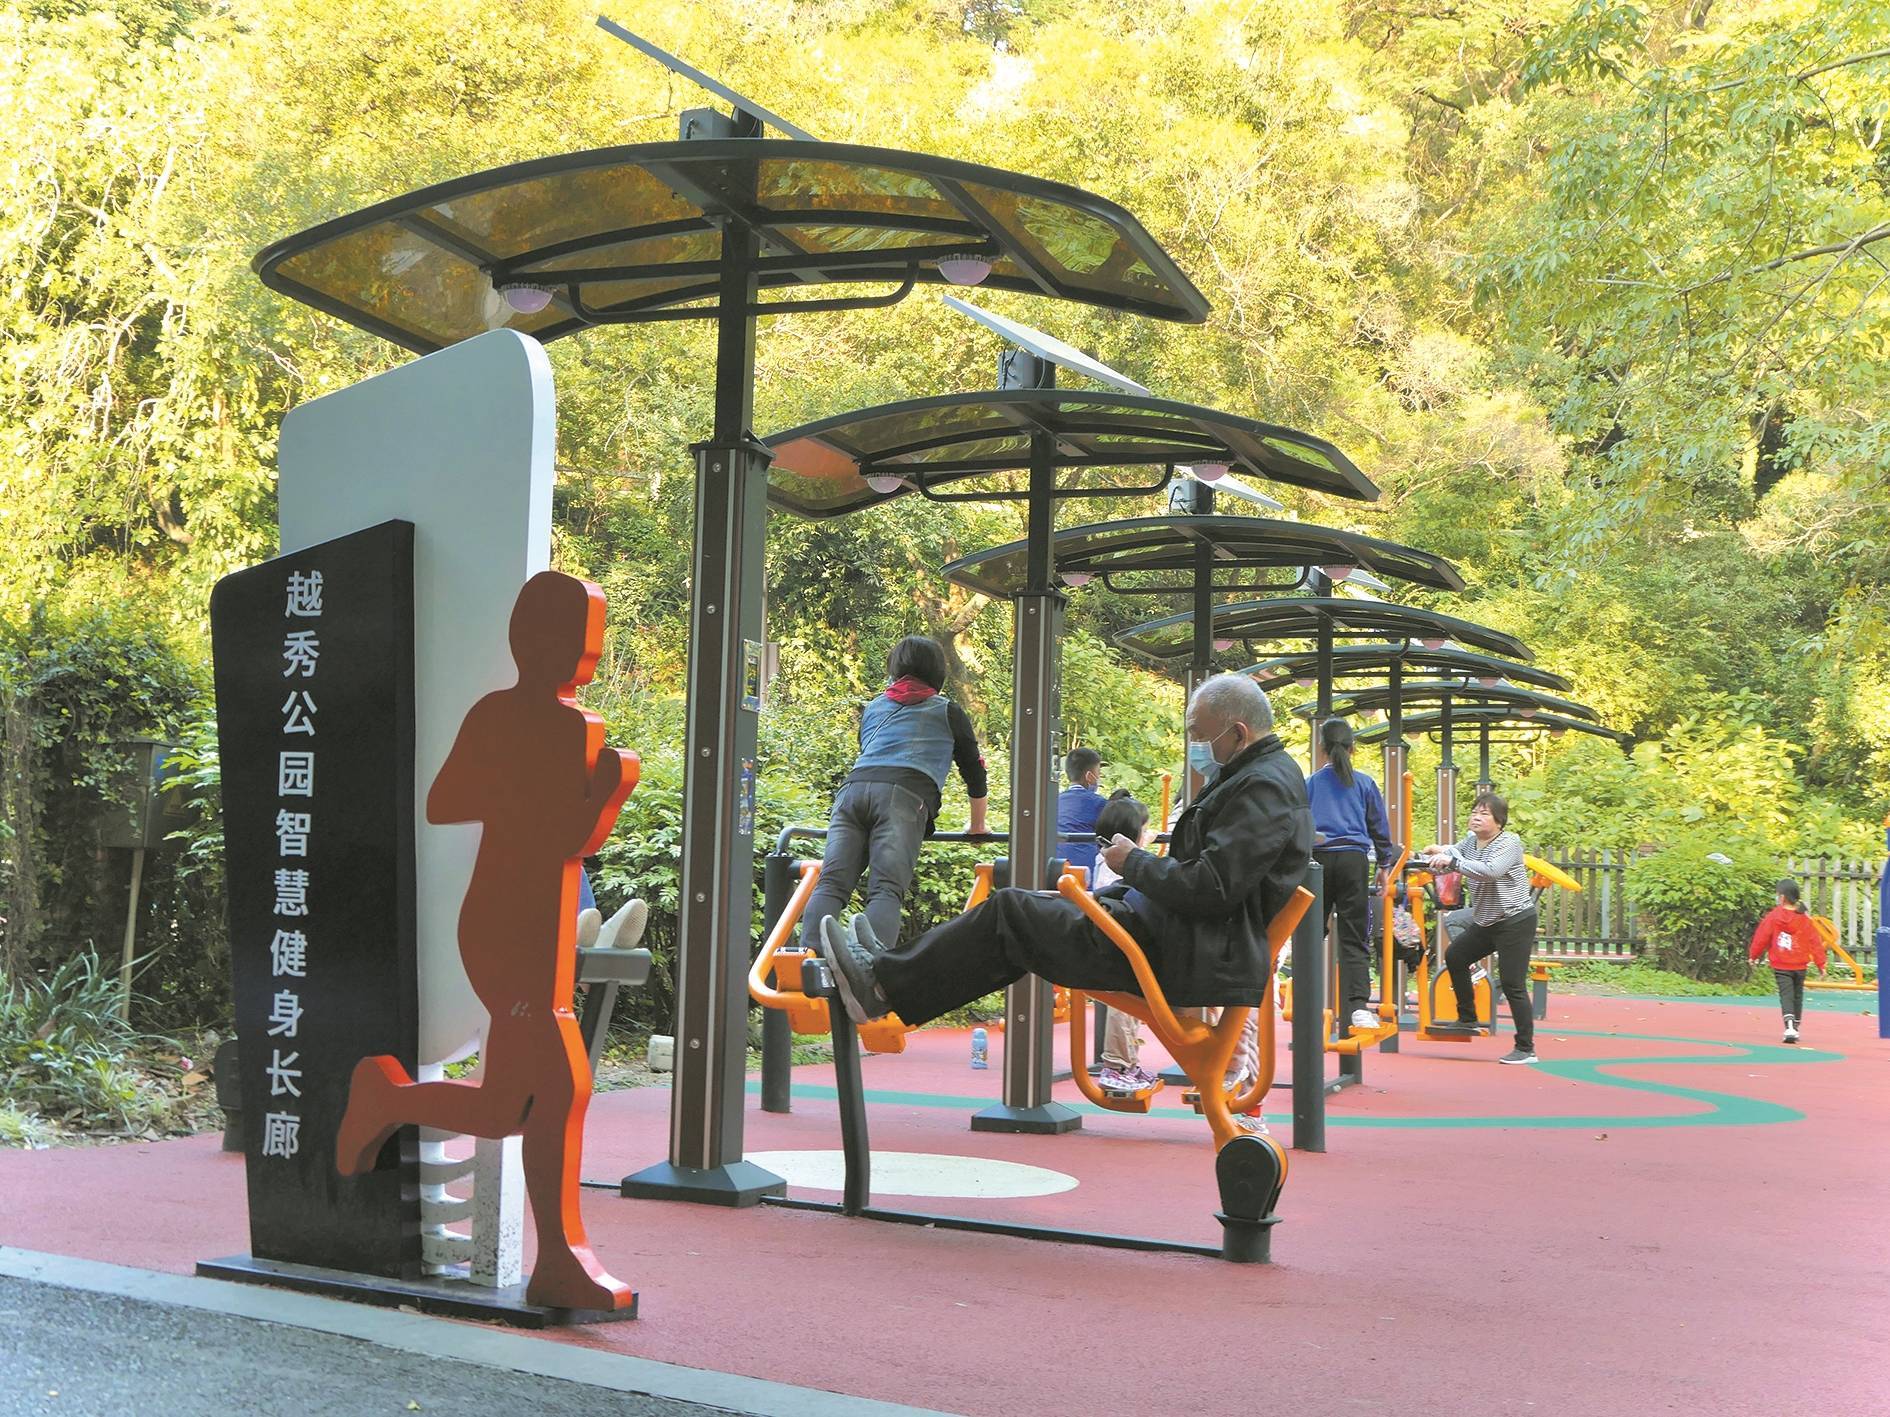 广州市越秀公园户外健身设施升级 锻炼实现智能化